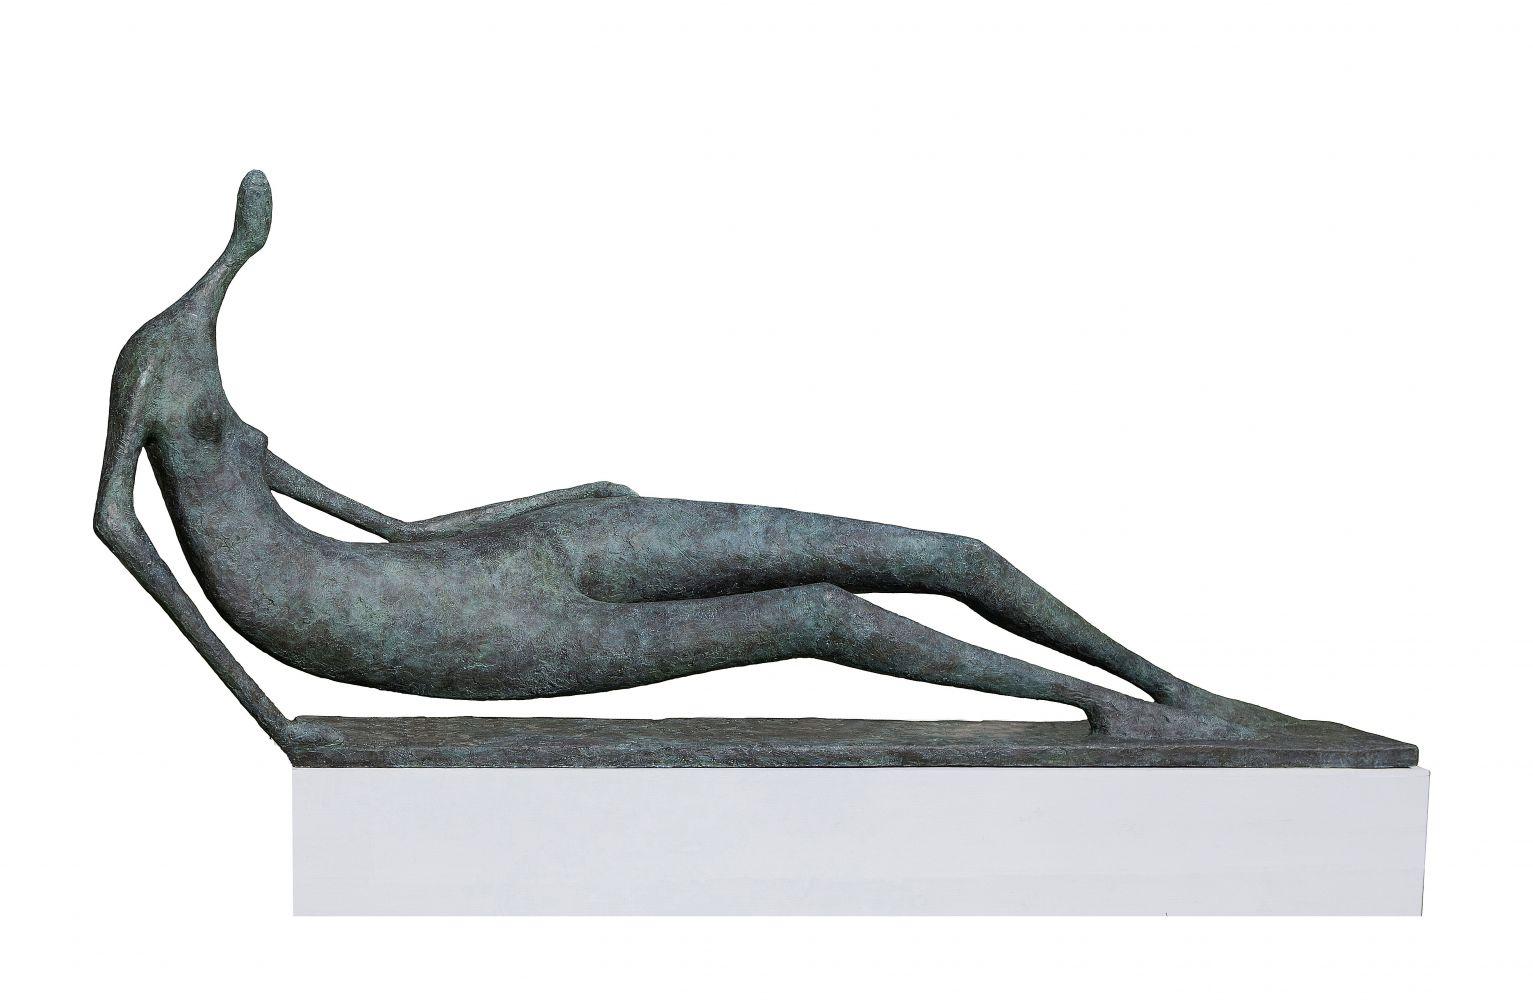 Monumental Lying Figure ist eine Bronzeskulptur des französischen zeitgenössischen Künstlers Pierre Yermia mit den Maßen 110 × 310 × 60 cm (43,3 × 122 × 23,6 in).  
Die Skulptur ist signiert und nummeriert, gehört zu einer limitierten Auflage von 8